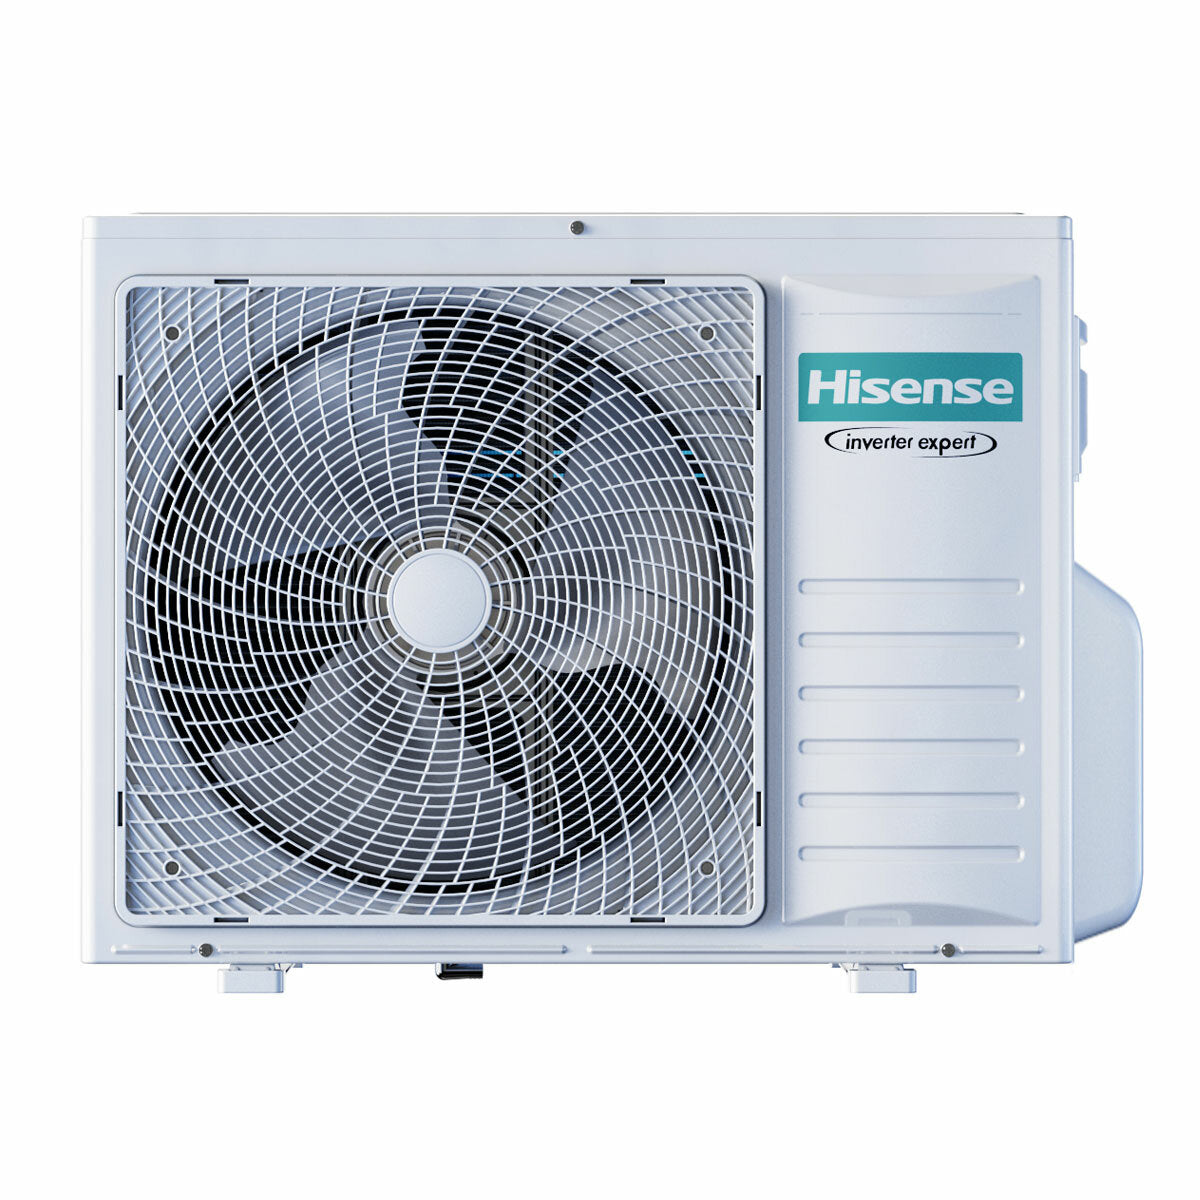 Hisense Hi-Comfort Quadri-Split-Klimaanlage 7000+7000+7000+9000 BTU Inverter A++ WLAN-Außeneinheit 8 kW